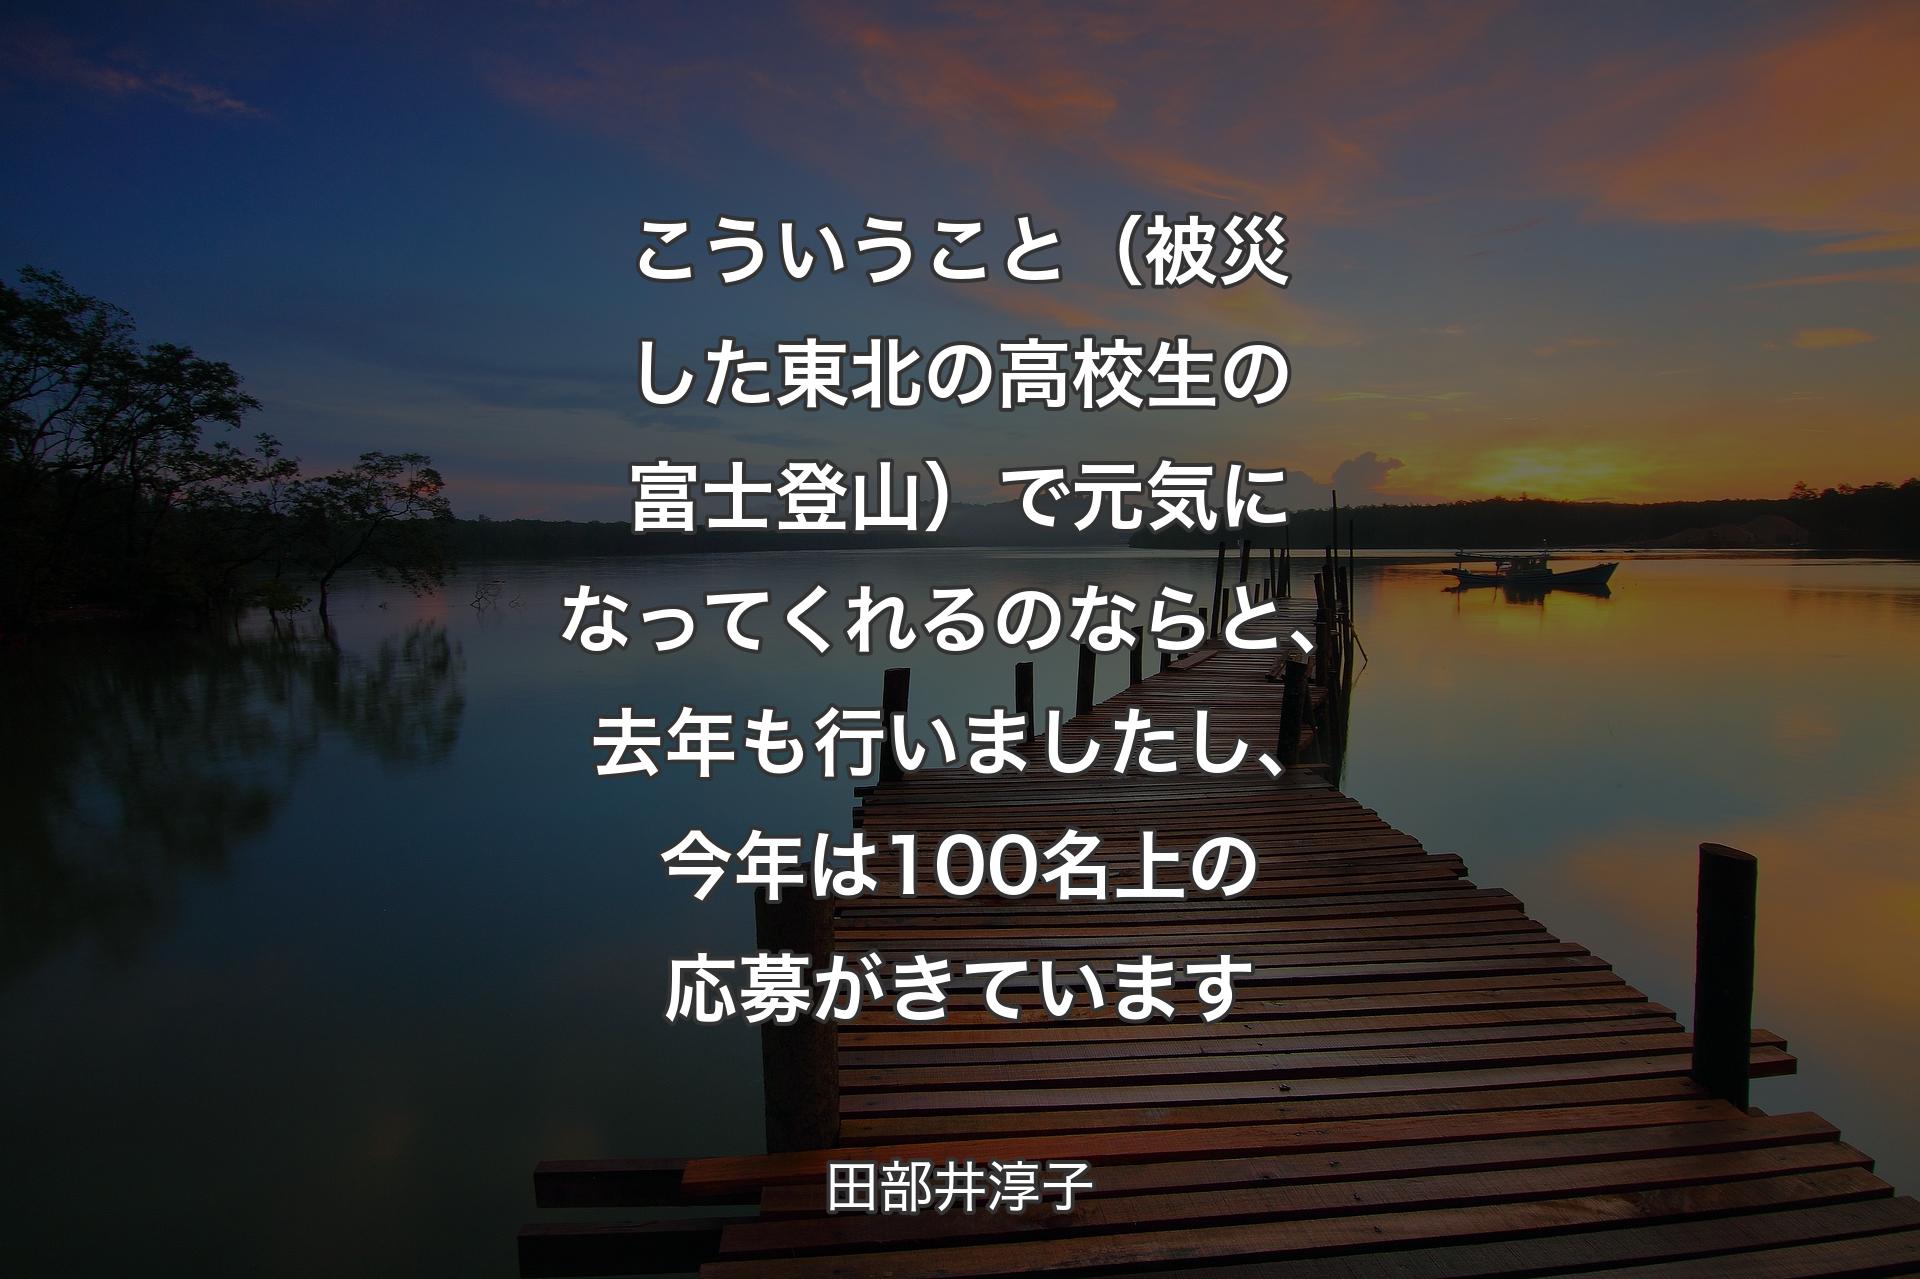 【背景3】こういうこと（被災した東北の高校生の富士登山）で元気になってくれるのならと、去年も行いましたし、今年は100名上の応募がきています - 田部井淳子